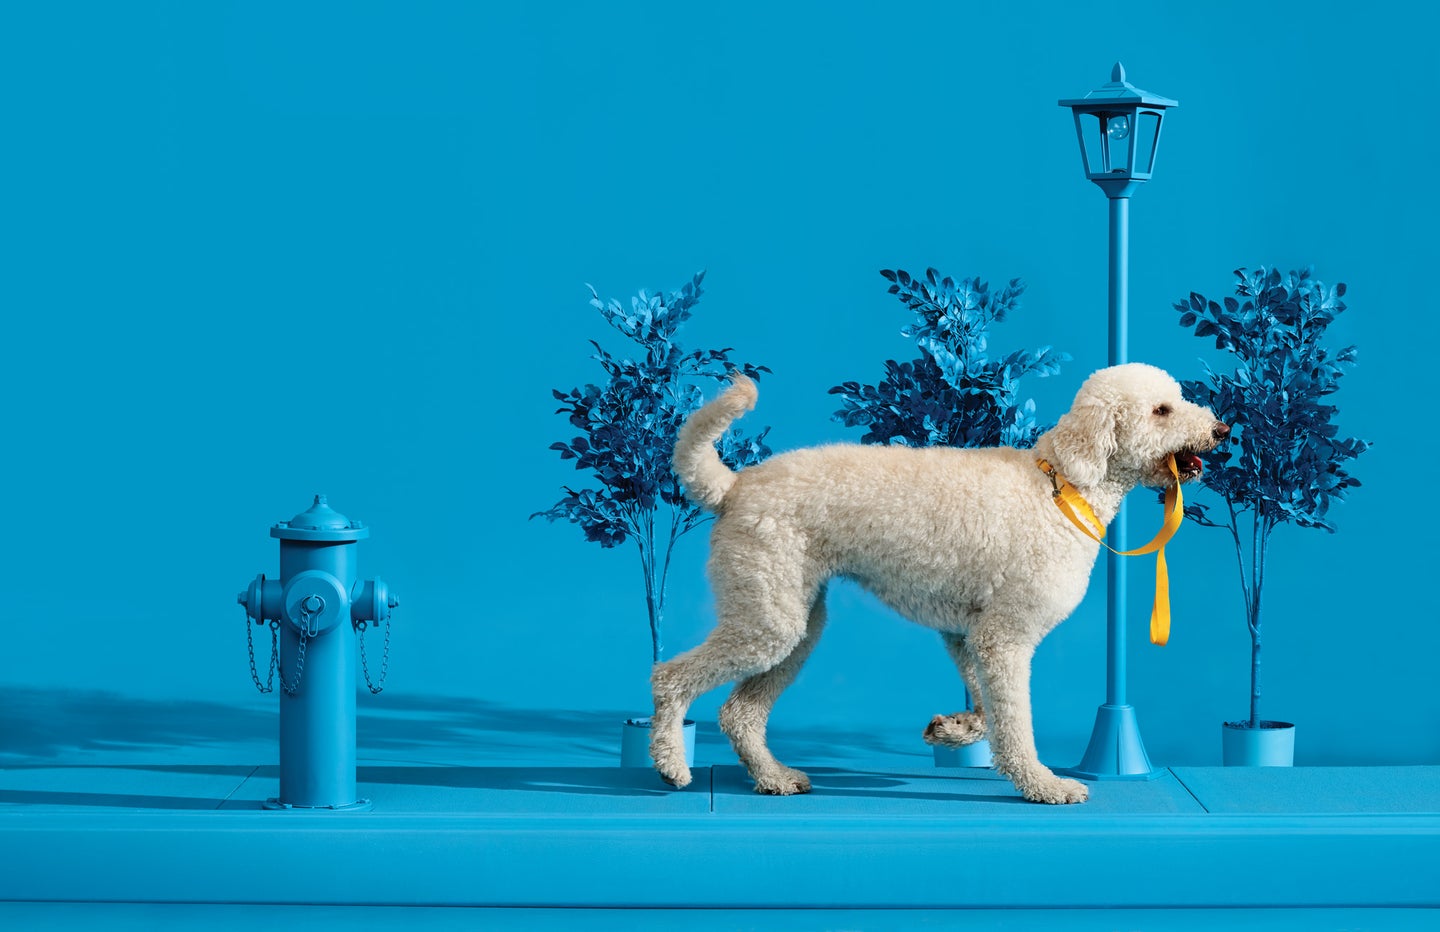 White dog on blue background